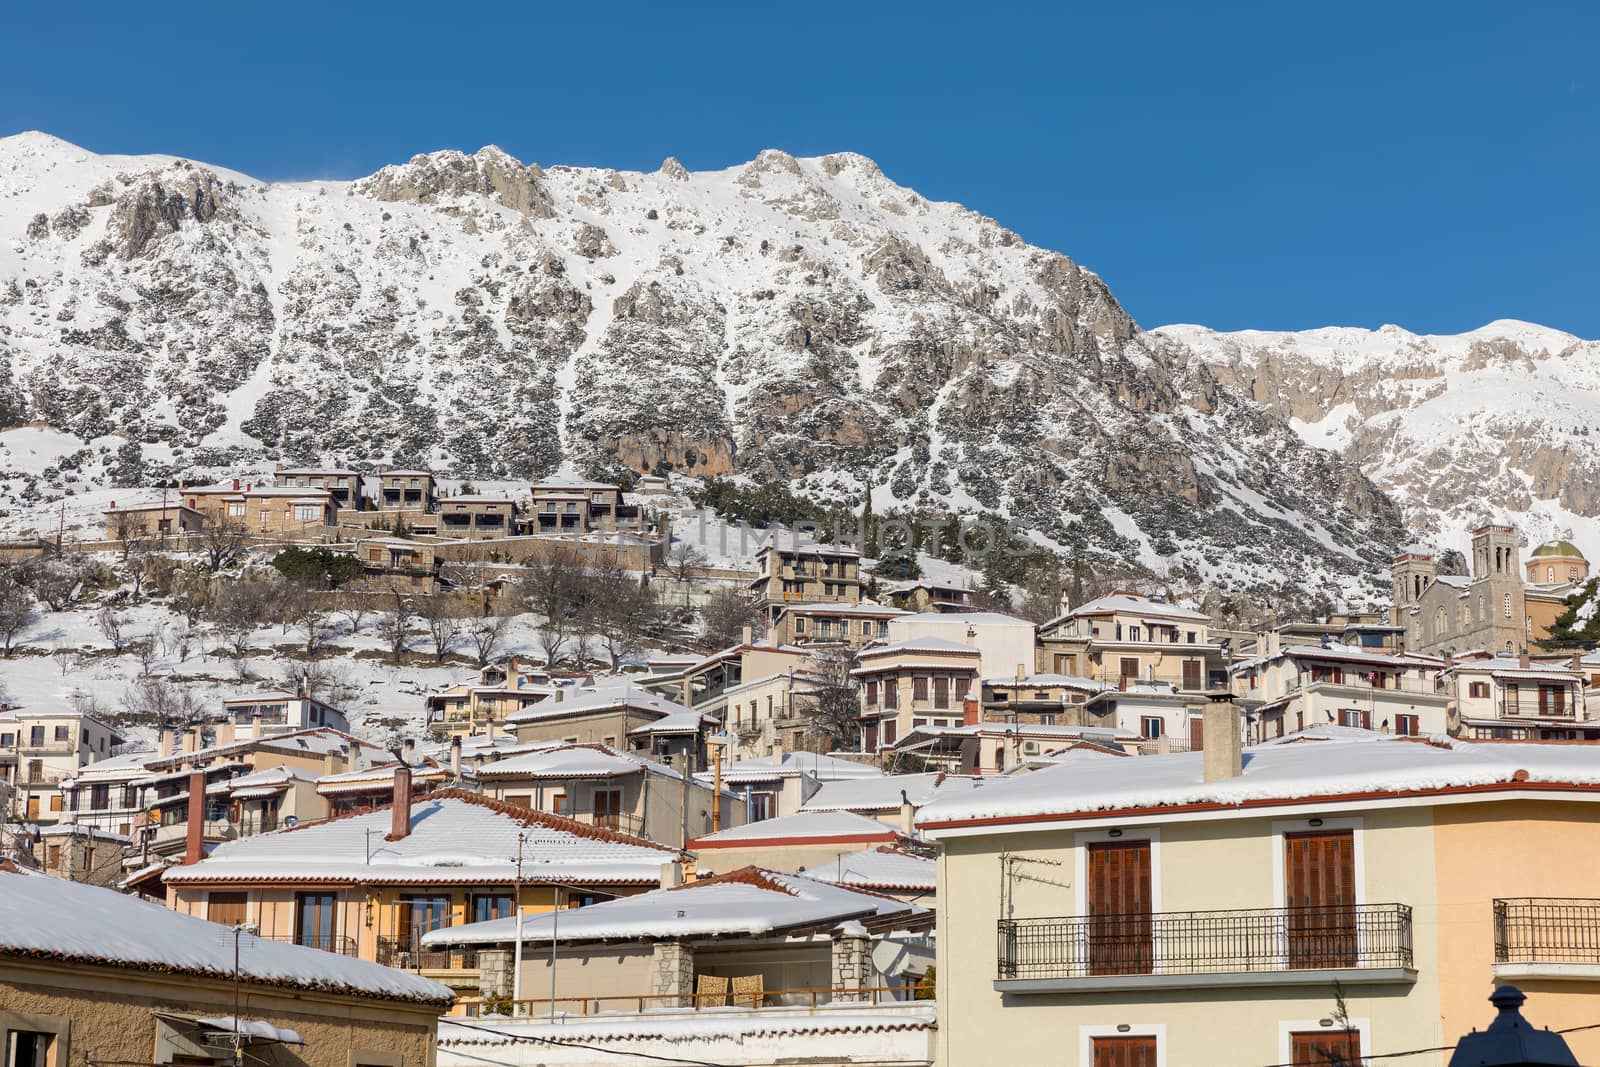 ARAHOVA, GREECE - JANUARY 6, 2019: Arahova village covered with snow in a sunny day 